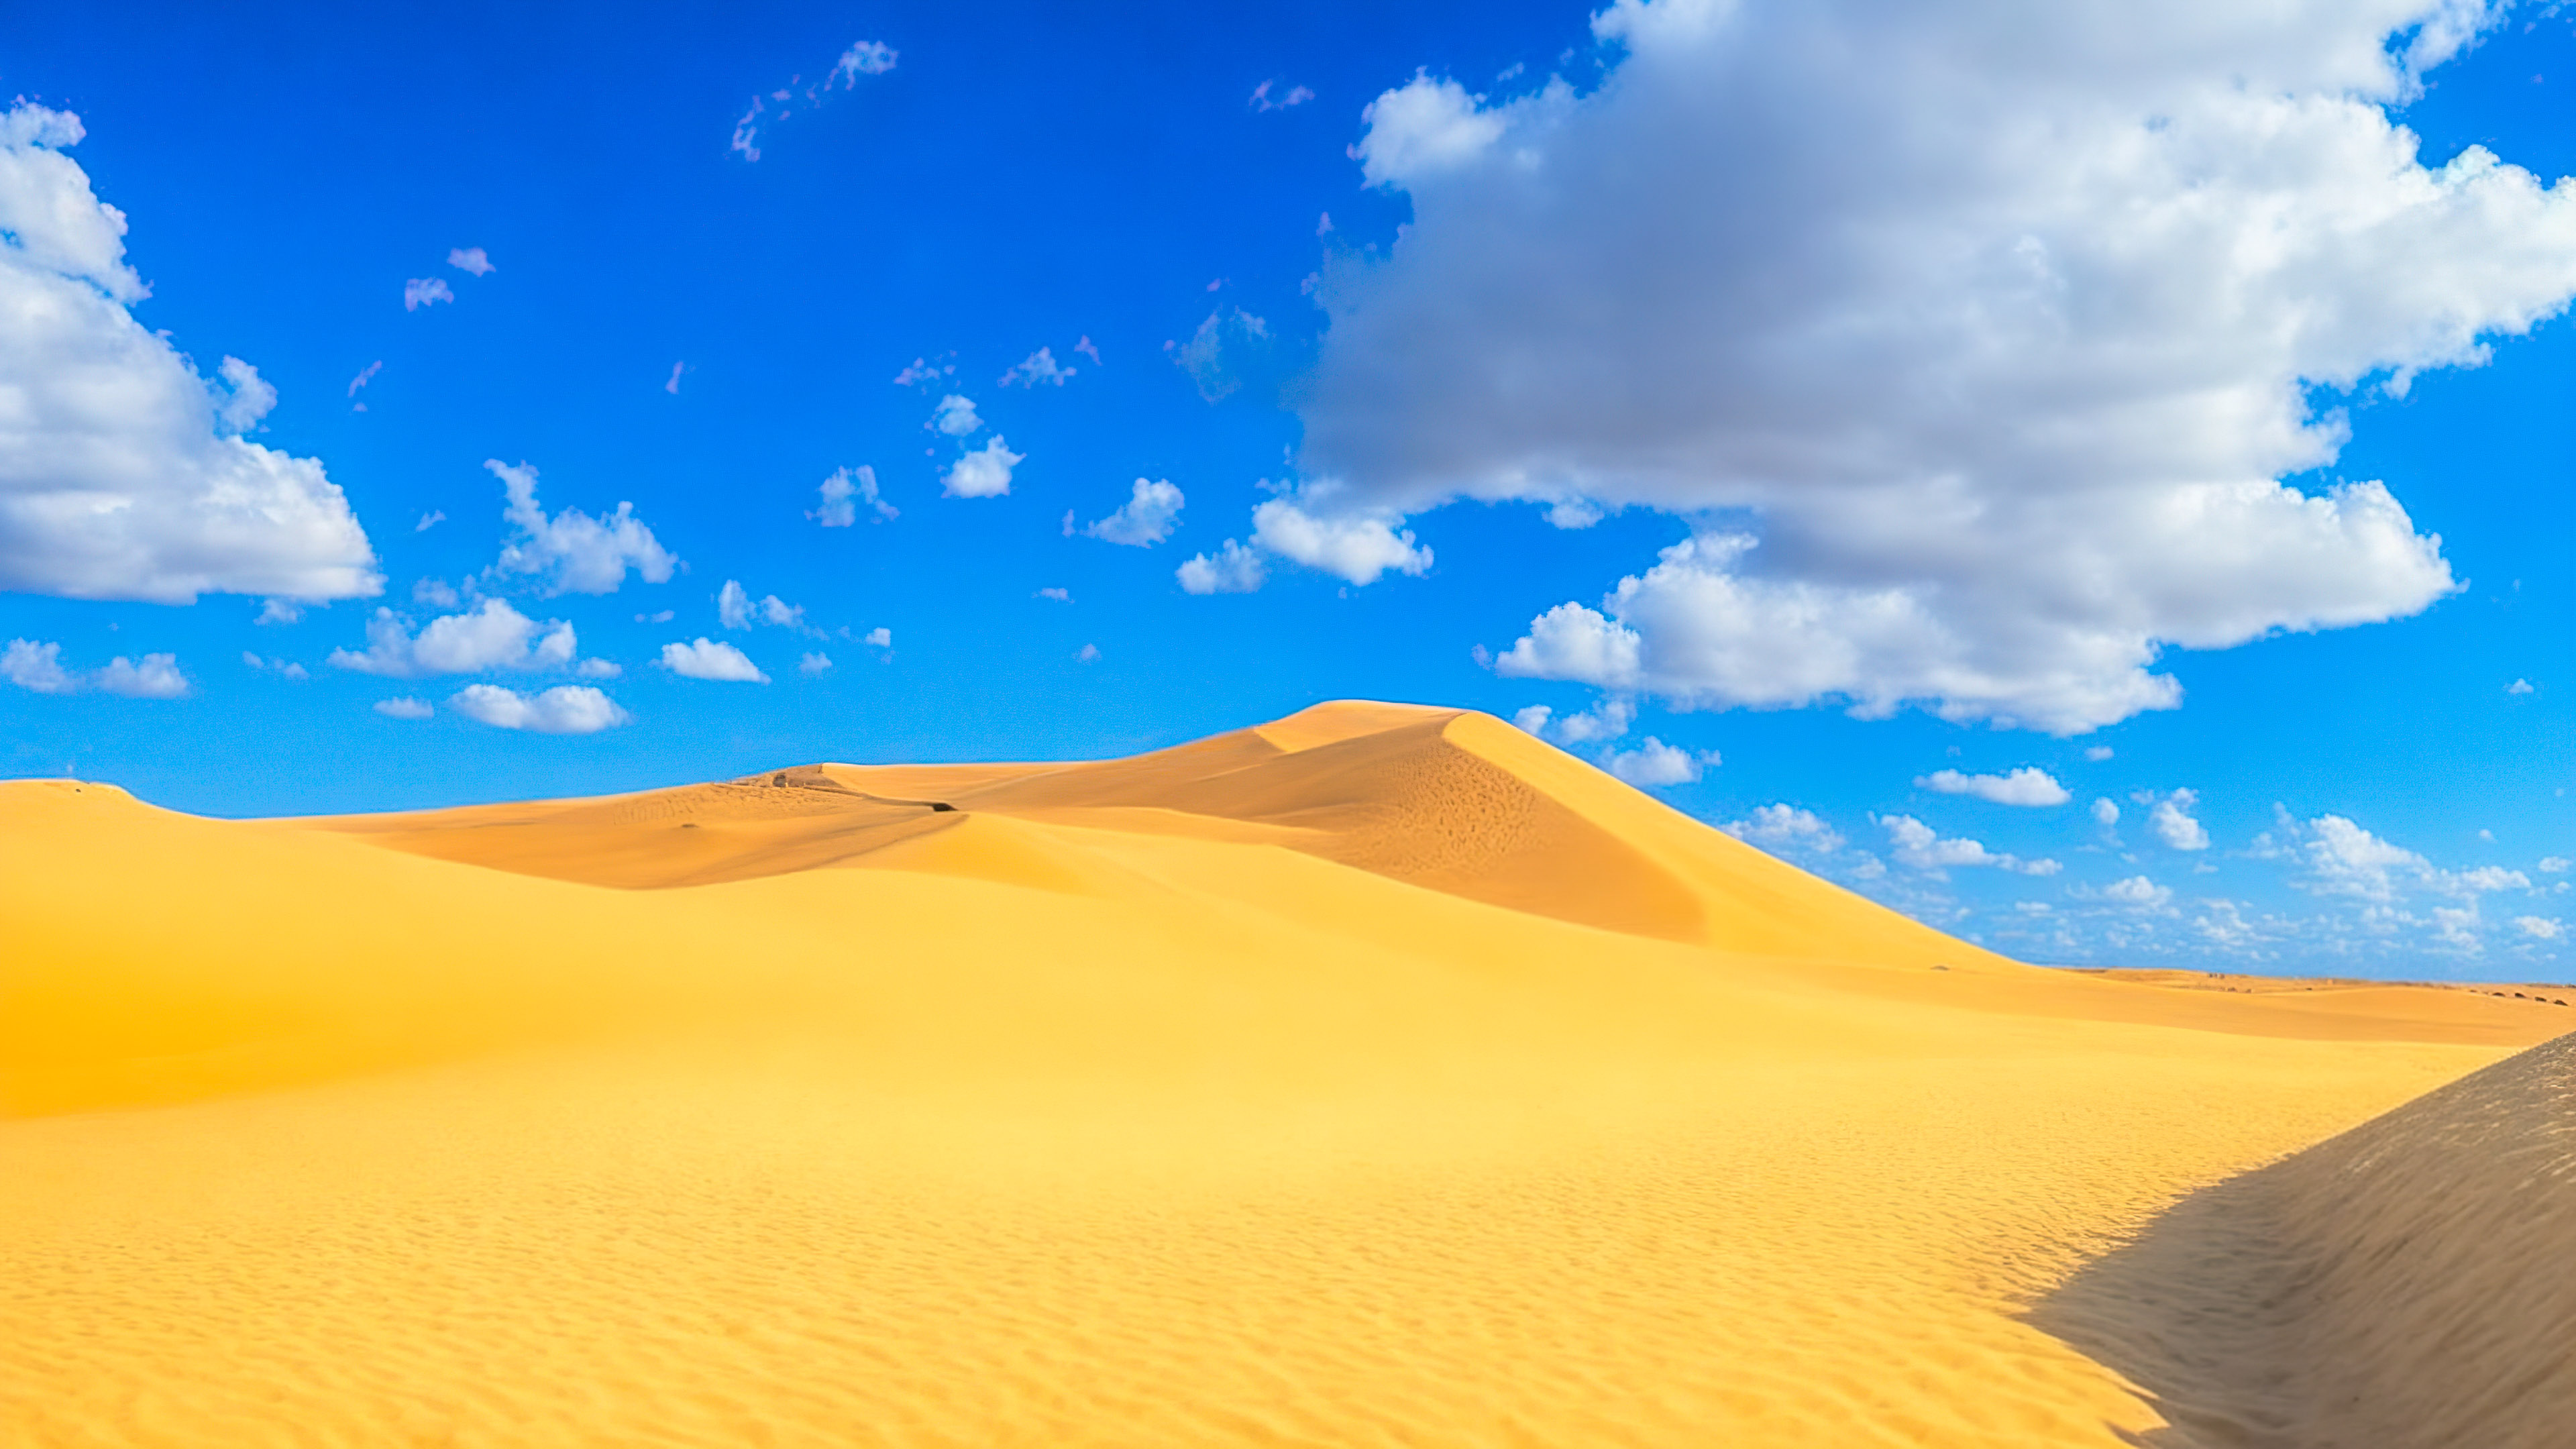 Perdez-vous dans la magie de notre joli fond d'écran de ciel, dépeignant un paysage désertique serein avec des dunes de sable s'étendant jusqu'à l'horizon sous un vaste ciel bleu, et laissez la beauté vous captiver.